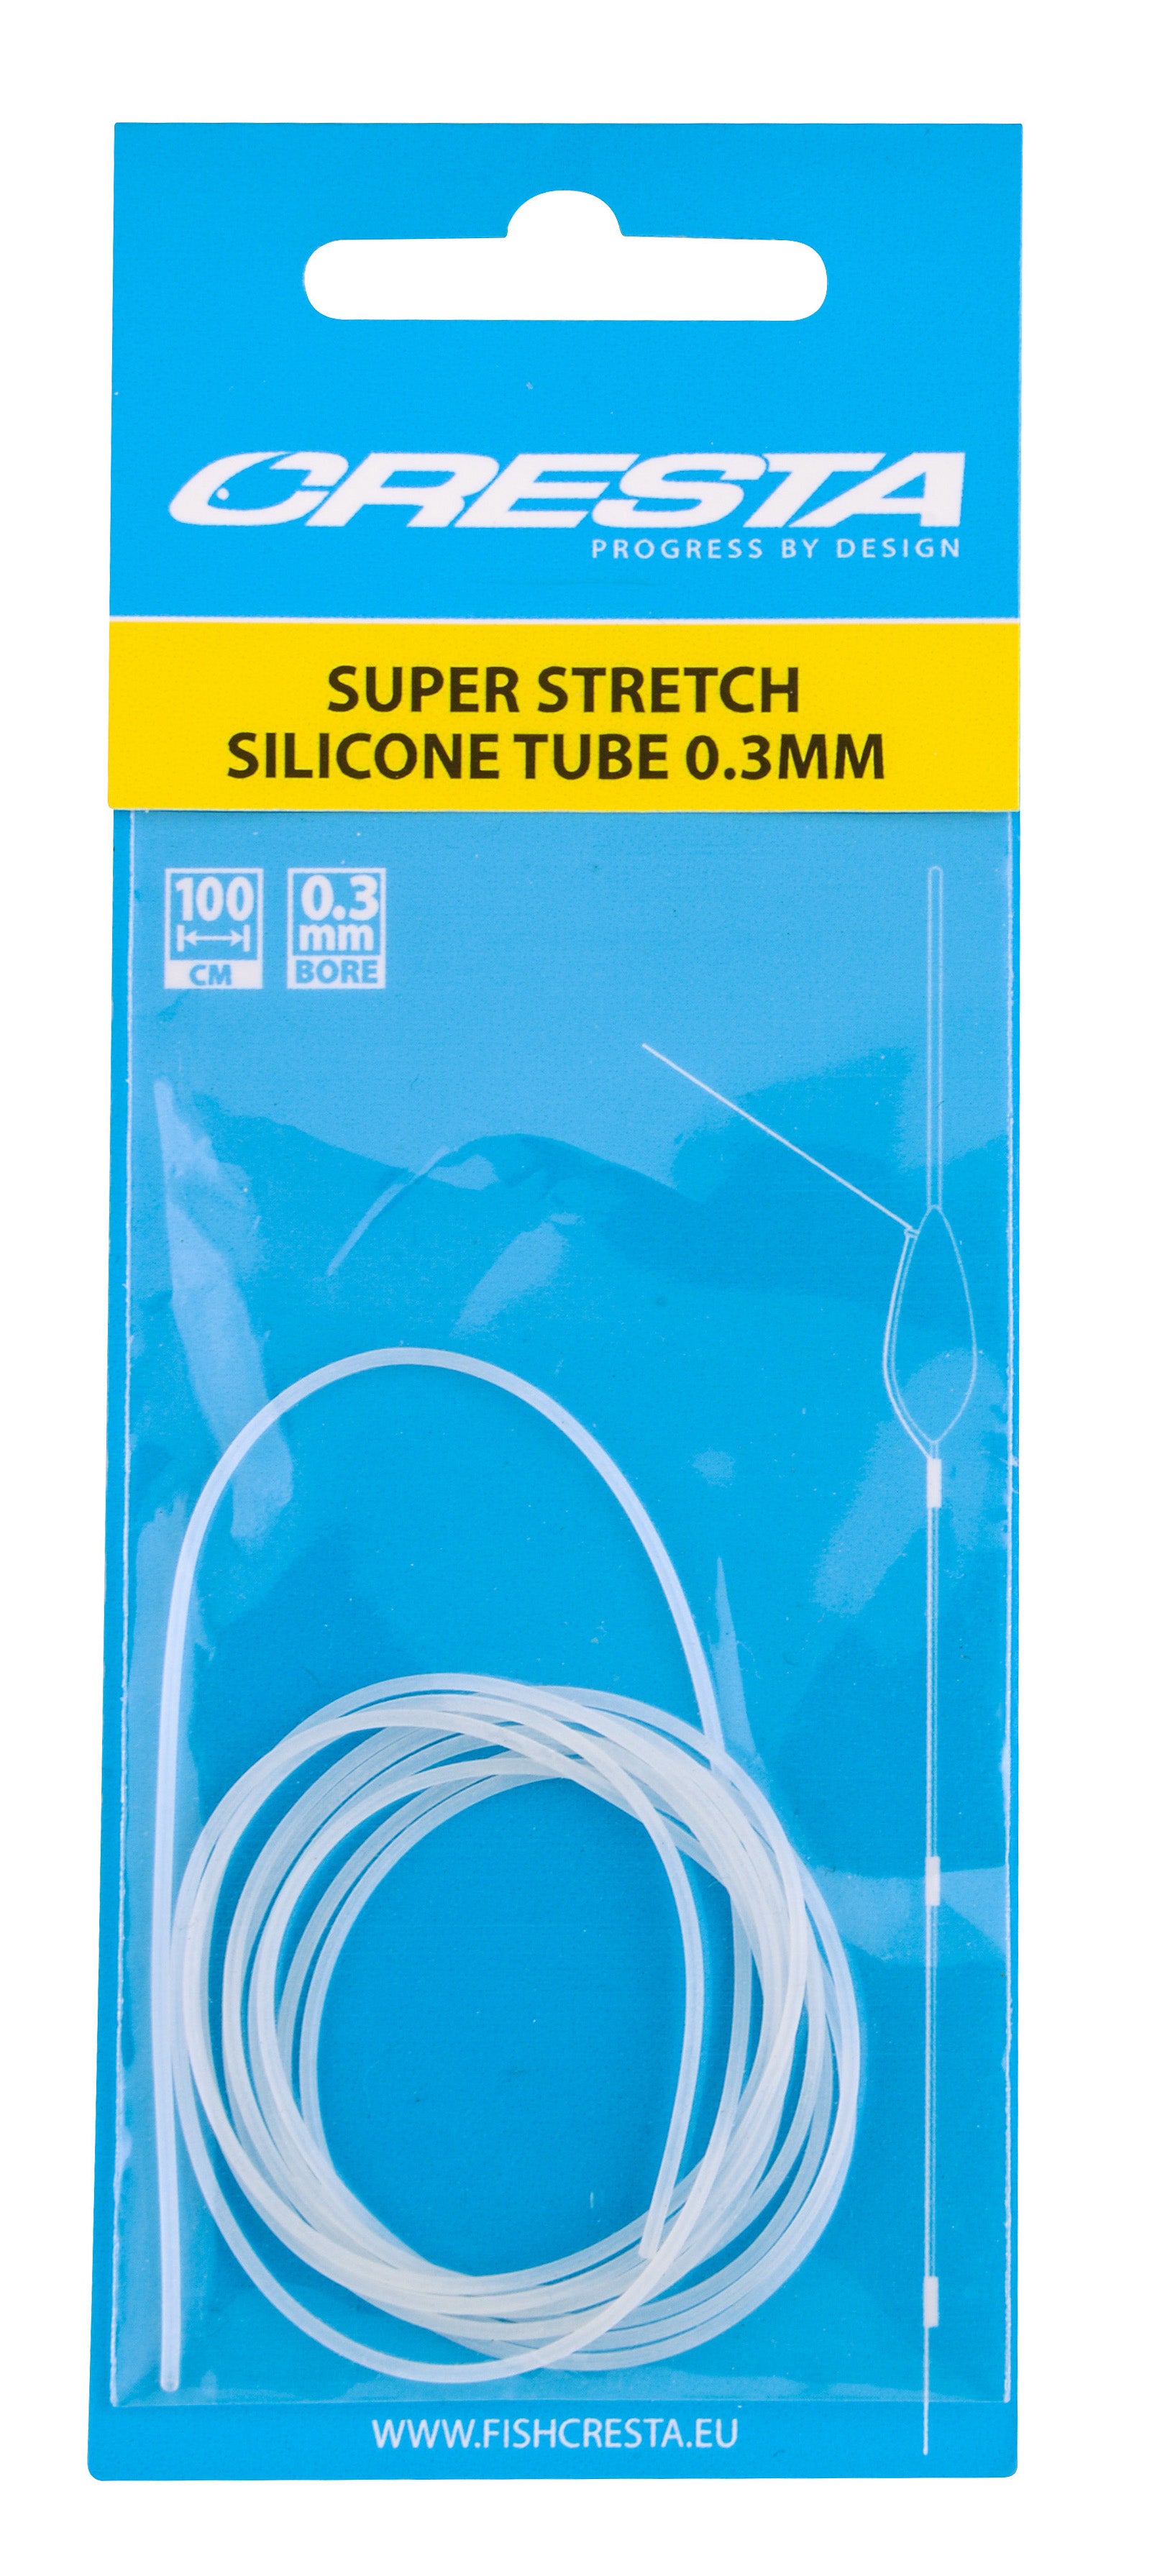 Cresta Silicone Tube